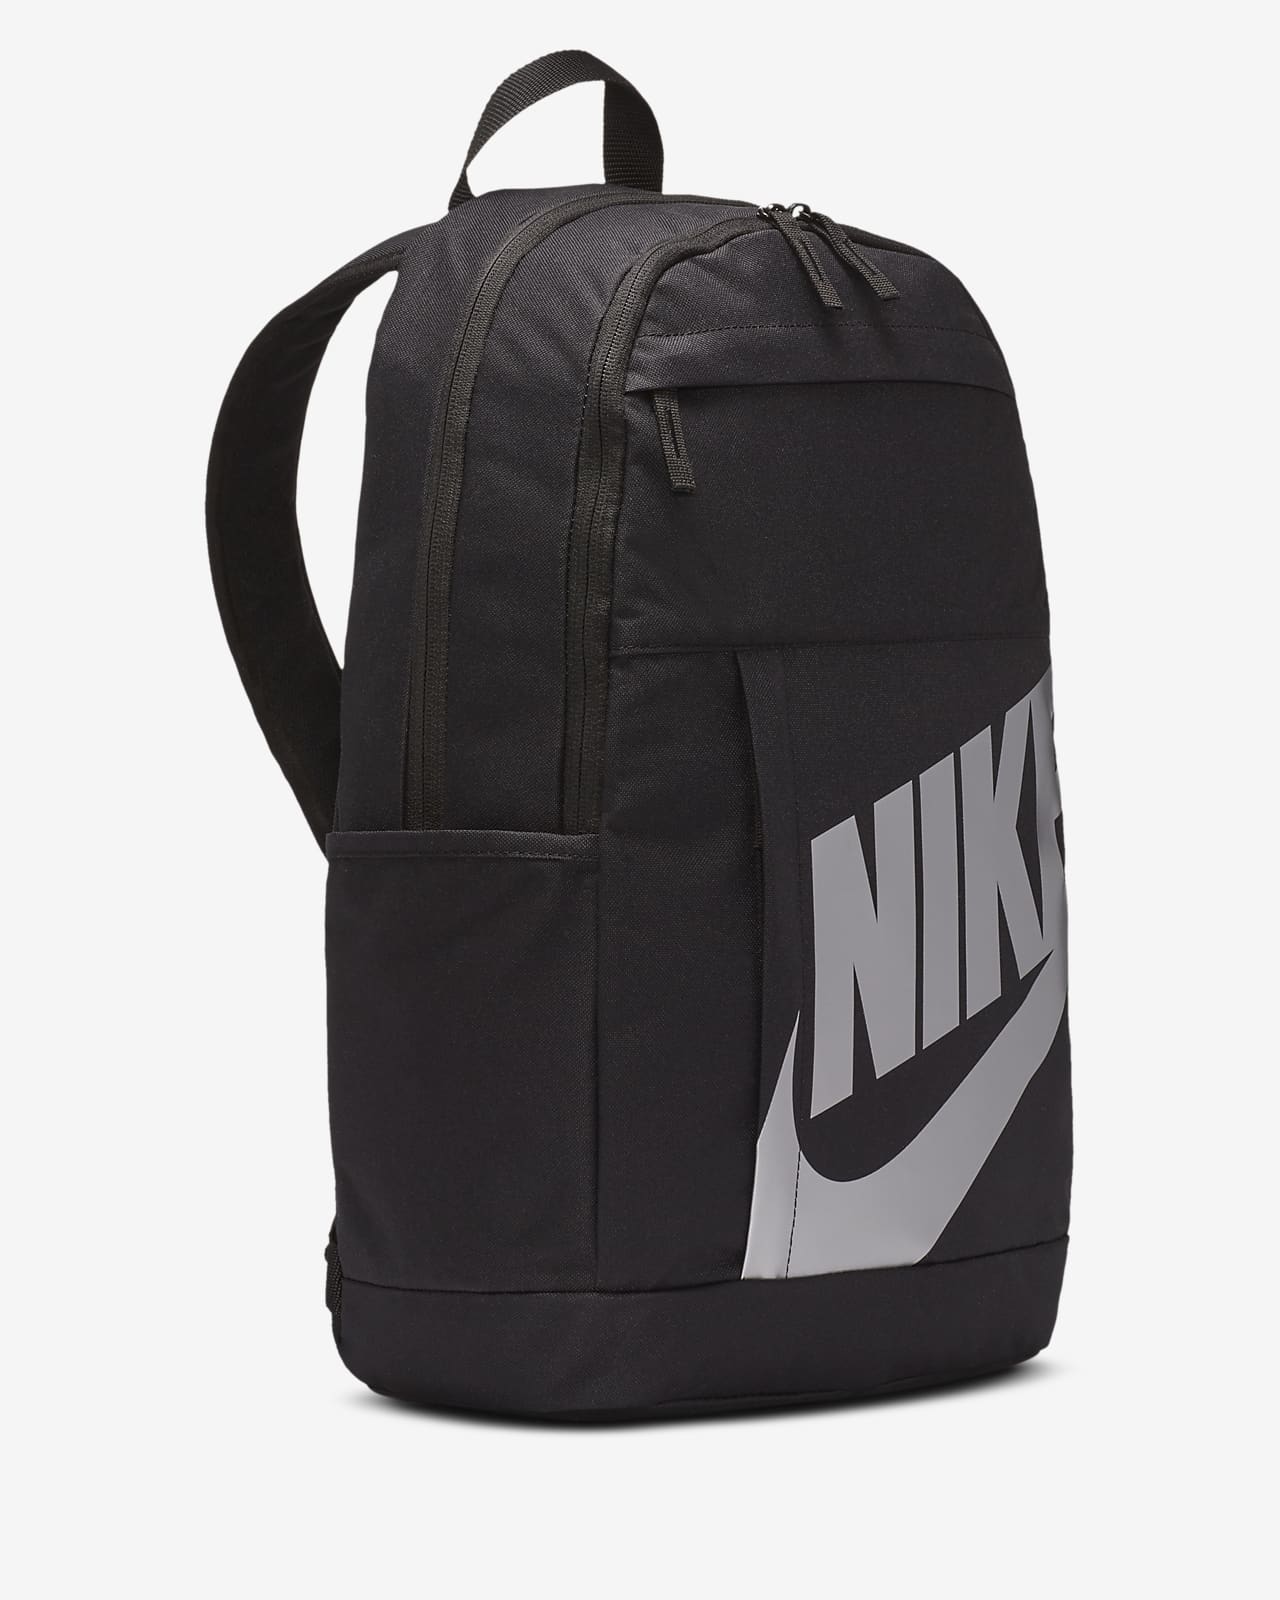 nike air backpack grey